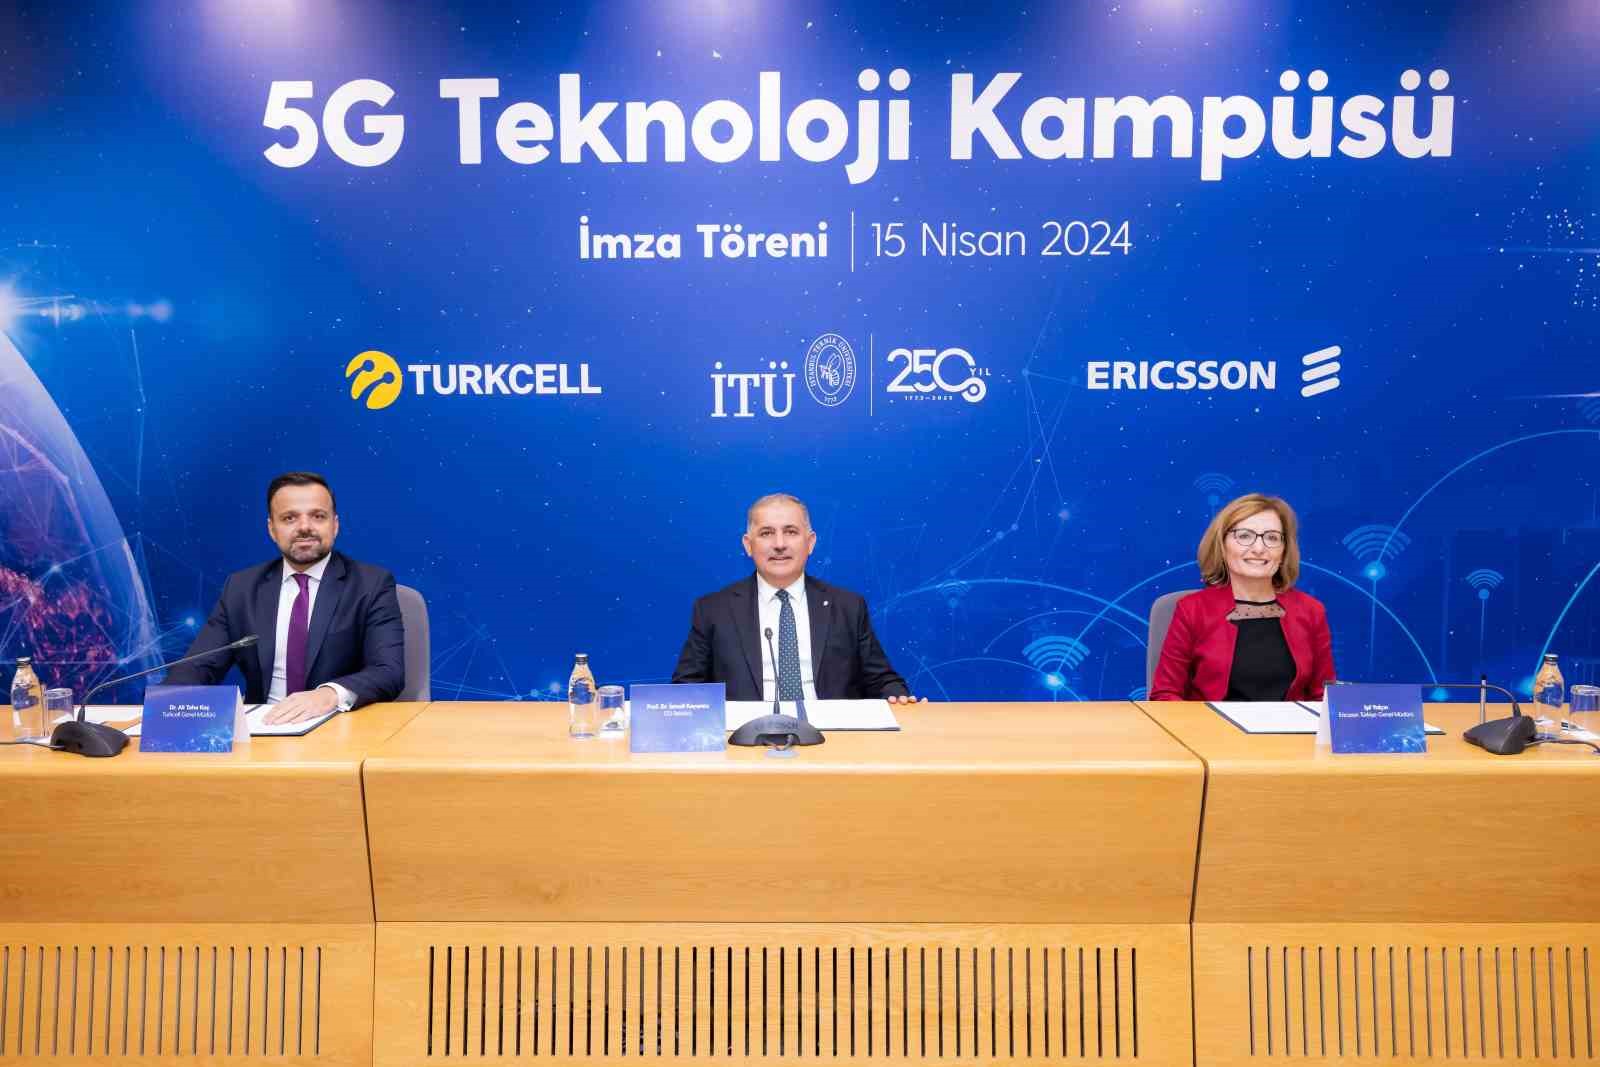 İTÜ, Turkcell ve Ericsson iş birliğiyle ’5G Teknoloji Kampüsü’ açıldı
